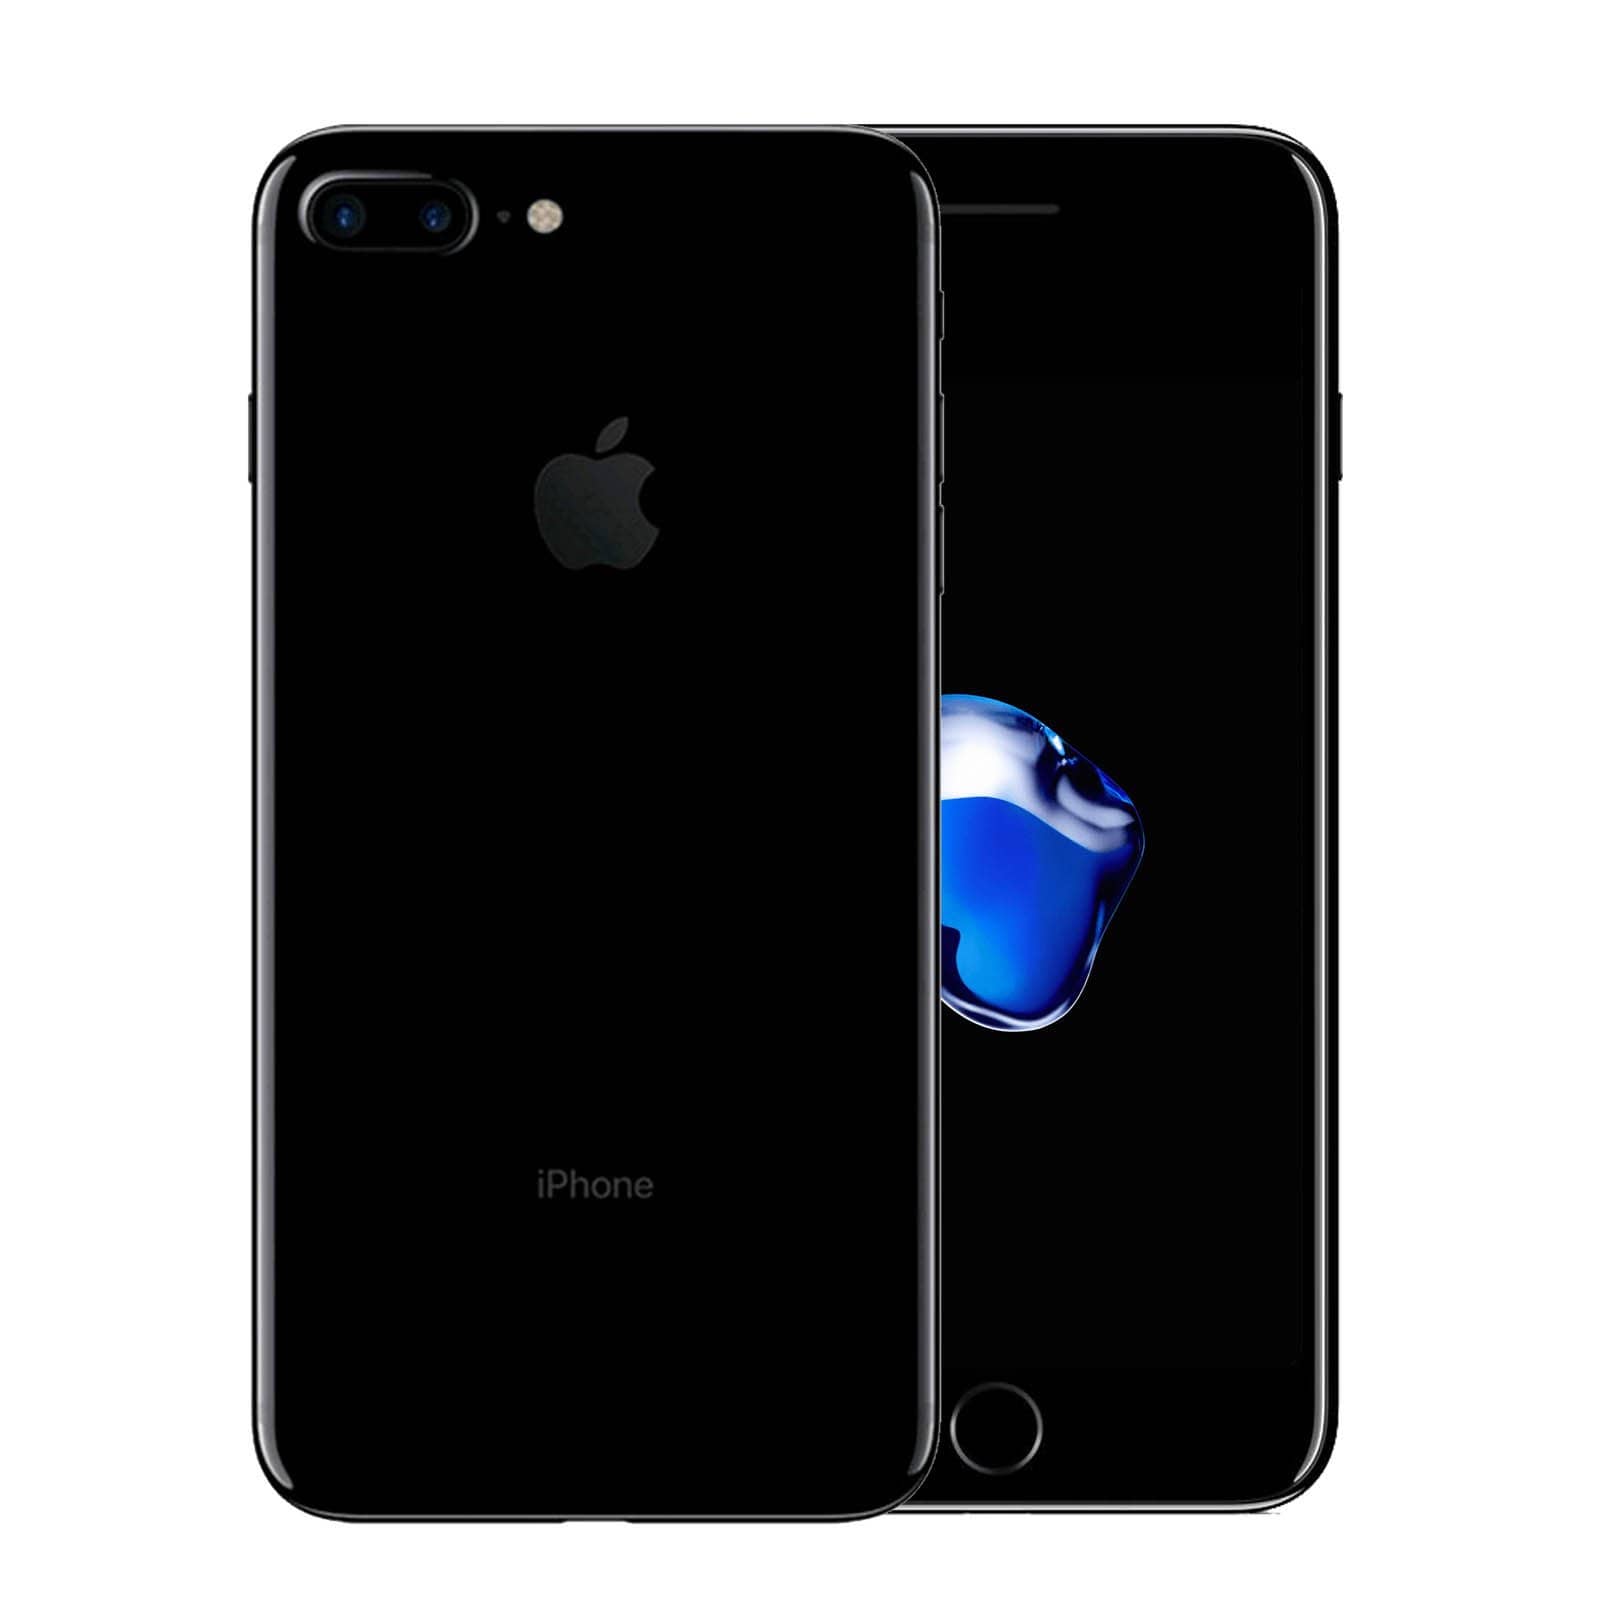 Apple iPhone 7 Plus 32GB Jet Black Good - Unlocked 32GB Jet Black Good